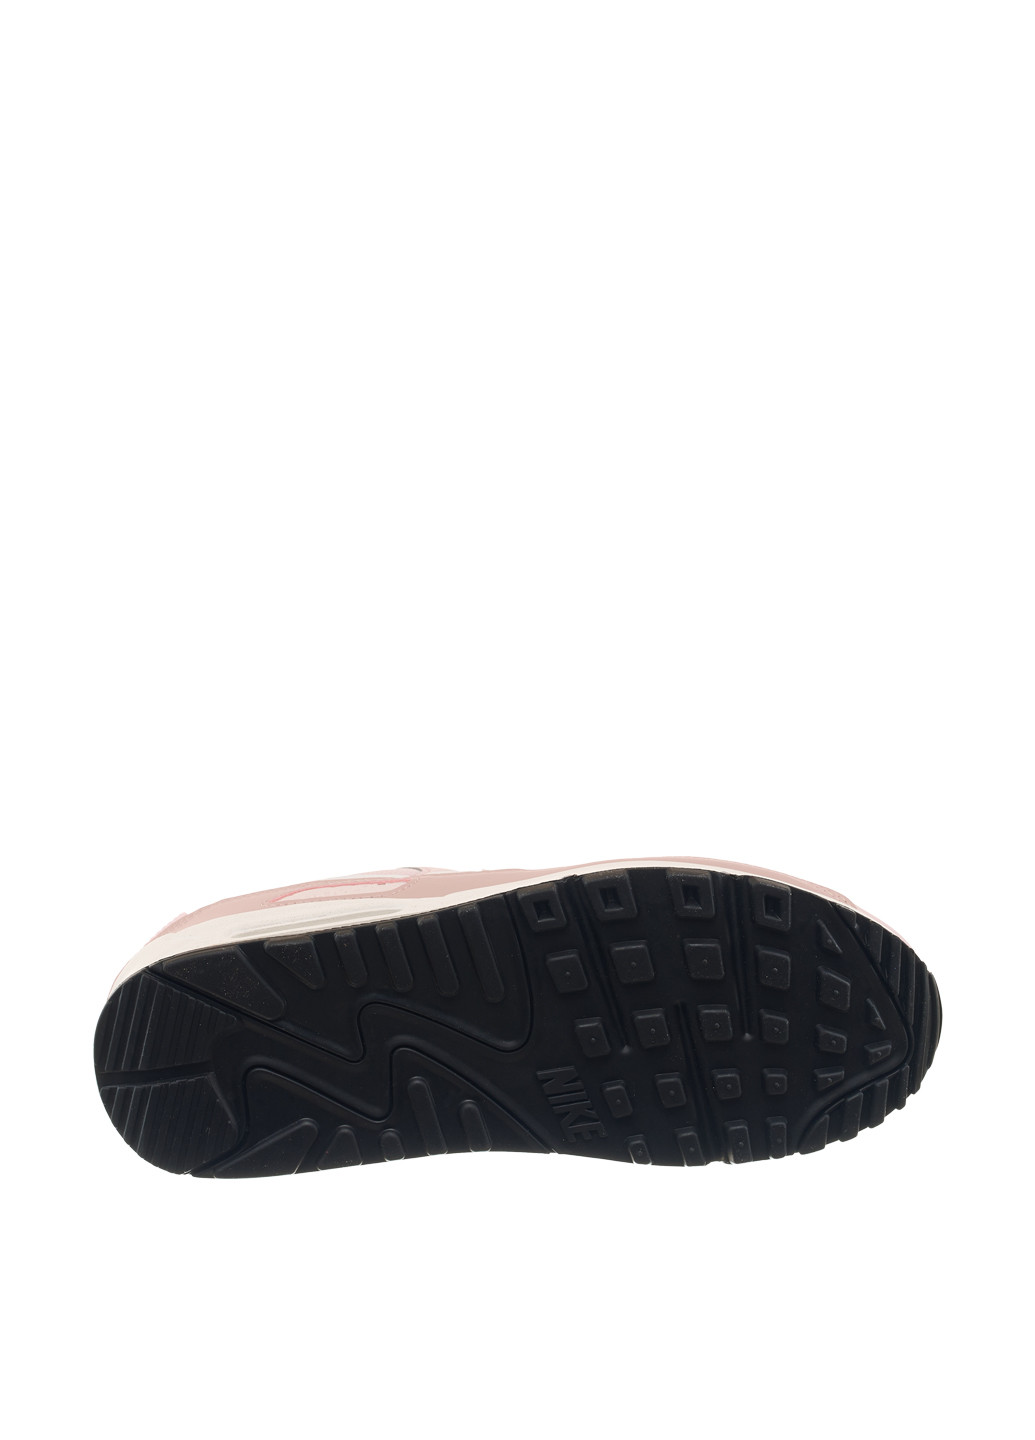 Цветные демисезонные кроссовки dh8010-600_2024 Nike Air Max 90